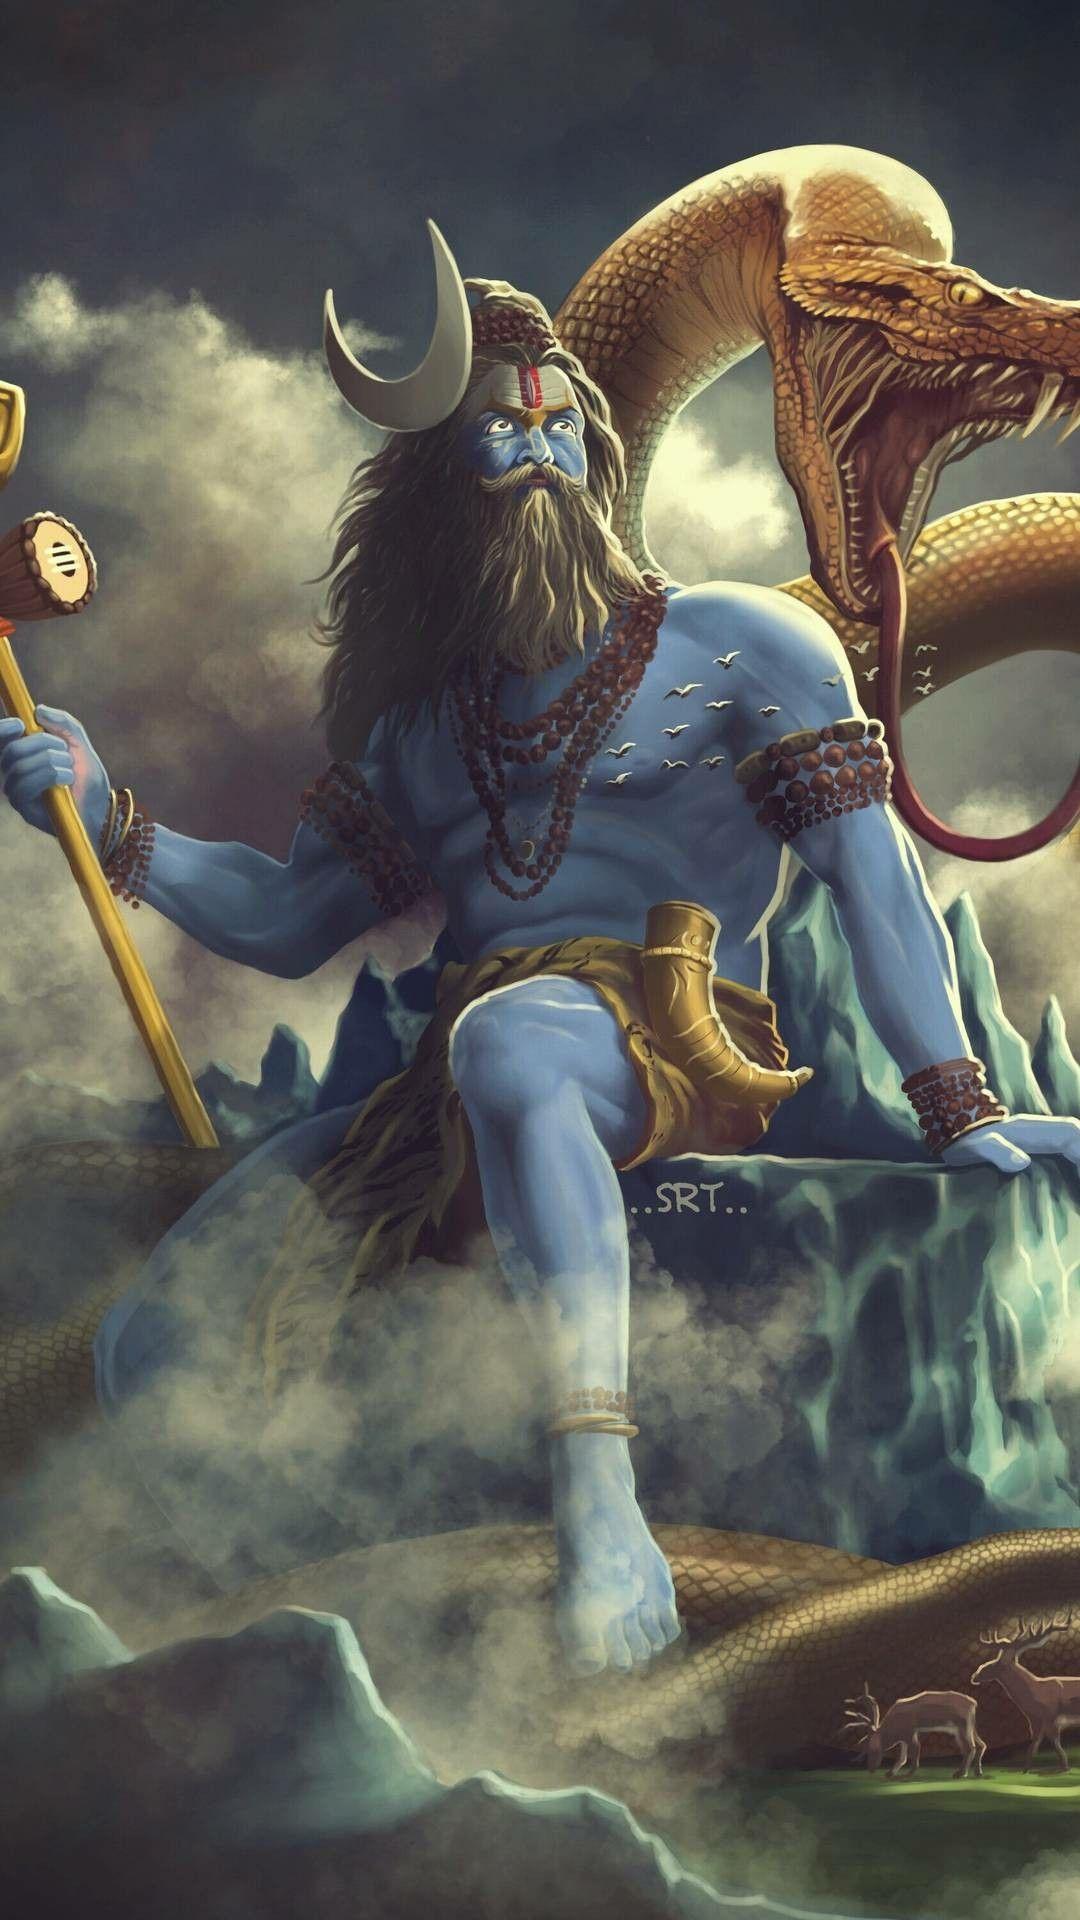 Best Bhole image. Lord shiva, Shiva shakti, God shiva